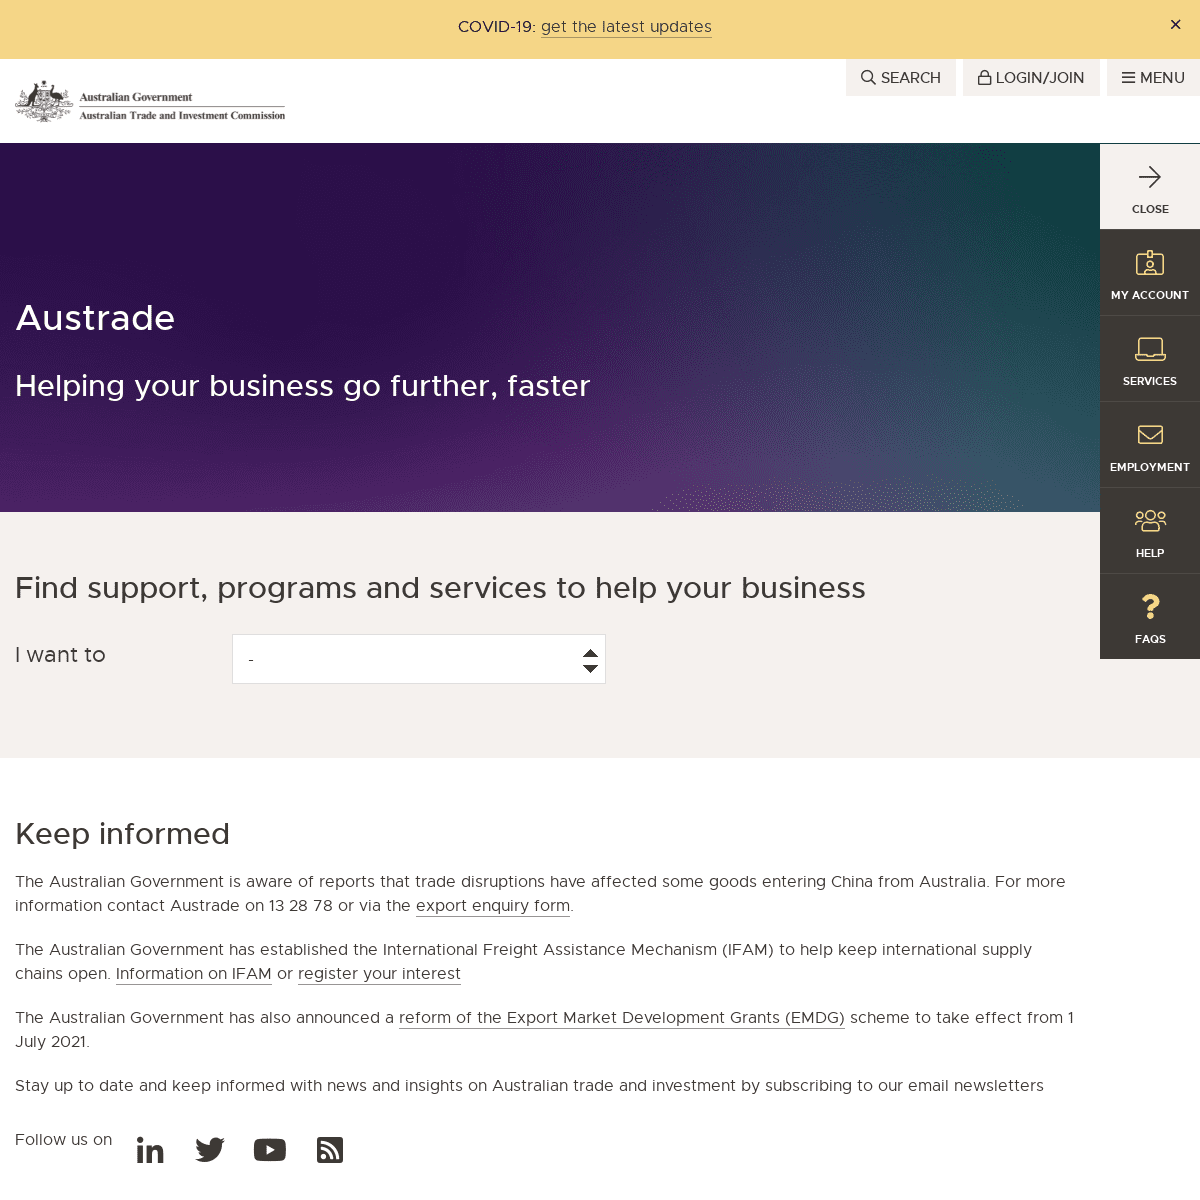 A complete backup of https://austrade.gov.au